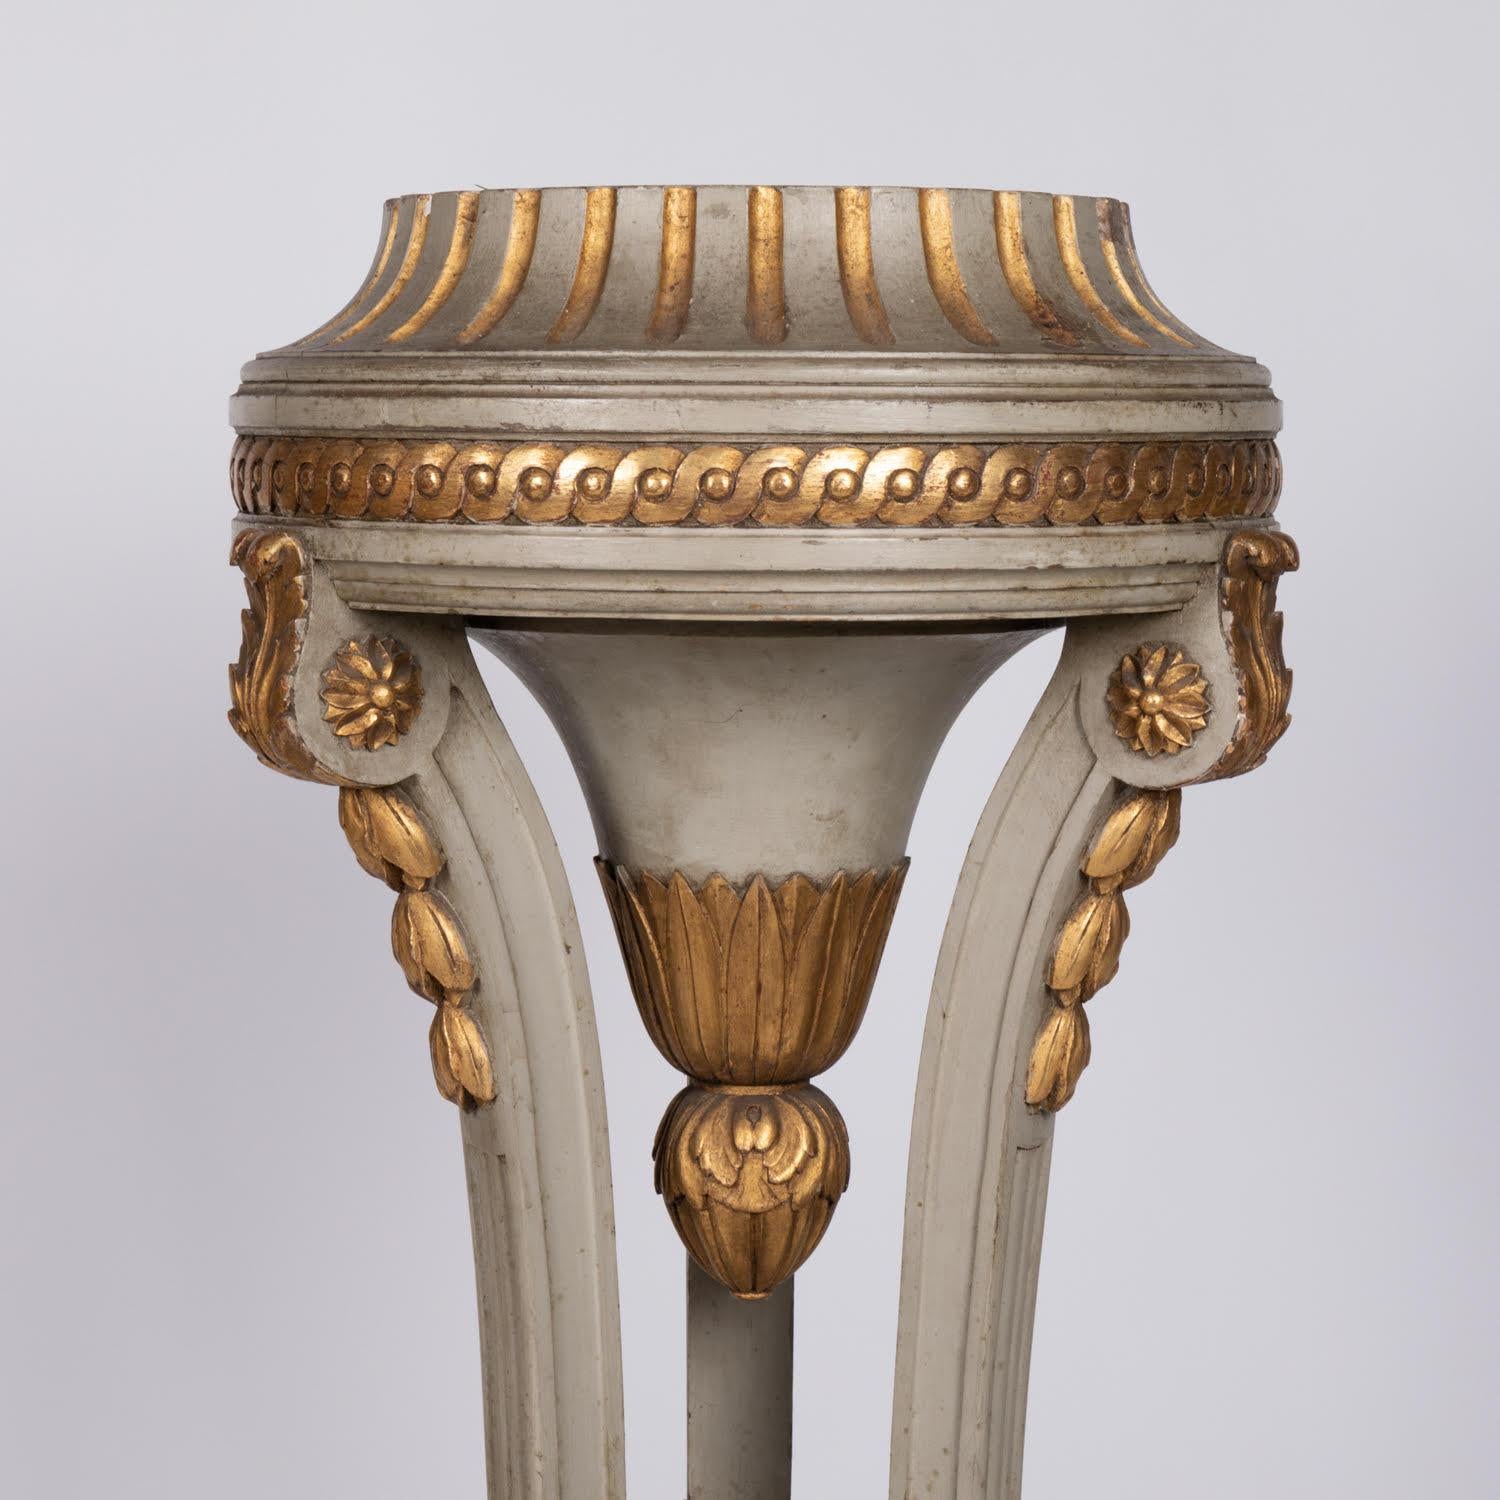 Steele, Selette en bois sculpté et doré, 19e siècle.

Colonne en bois sculpté et doré de style Louis XVI, 19e siècle.  

H : 110cm , D : 41cm, D : 35cm